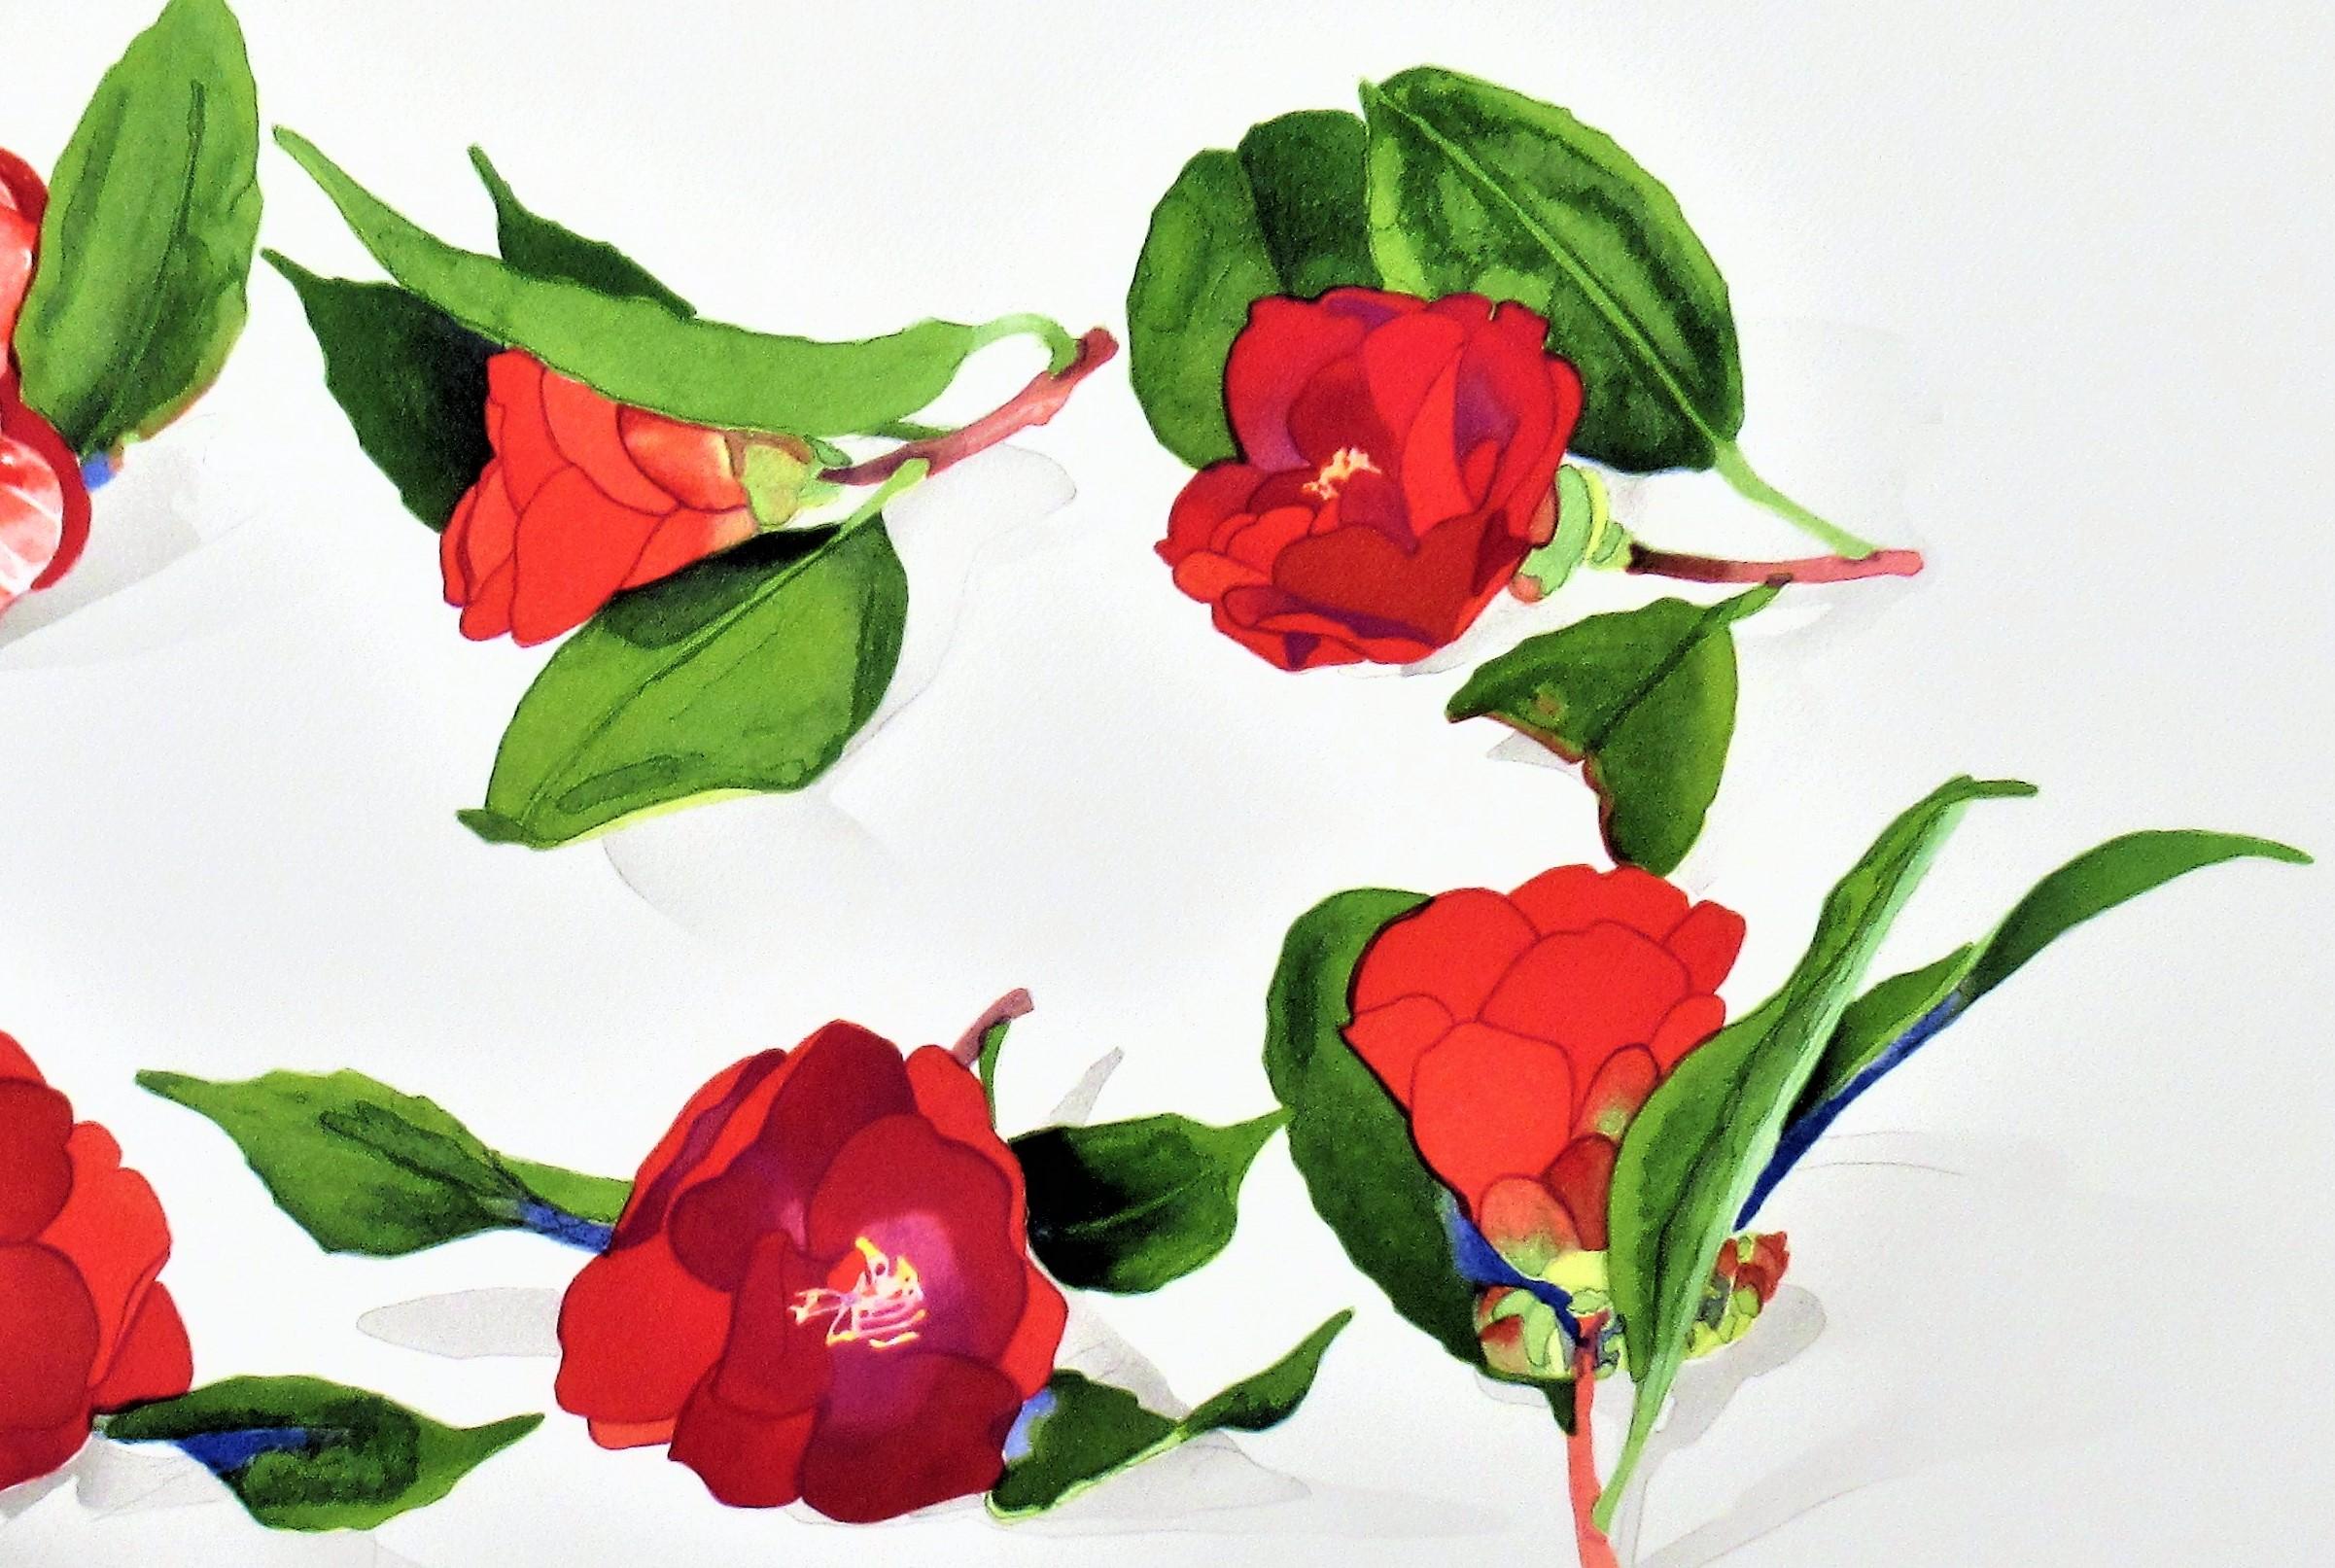 6 Camellias d'après un artiste japonais inconnu - Réalisme américain Print par Gary Bukovnik